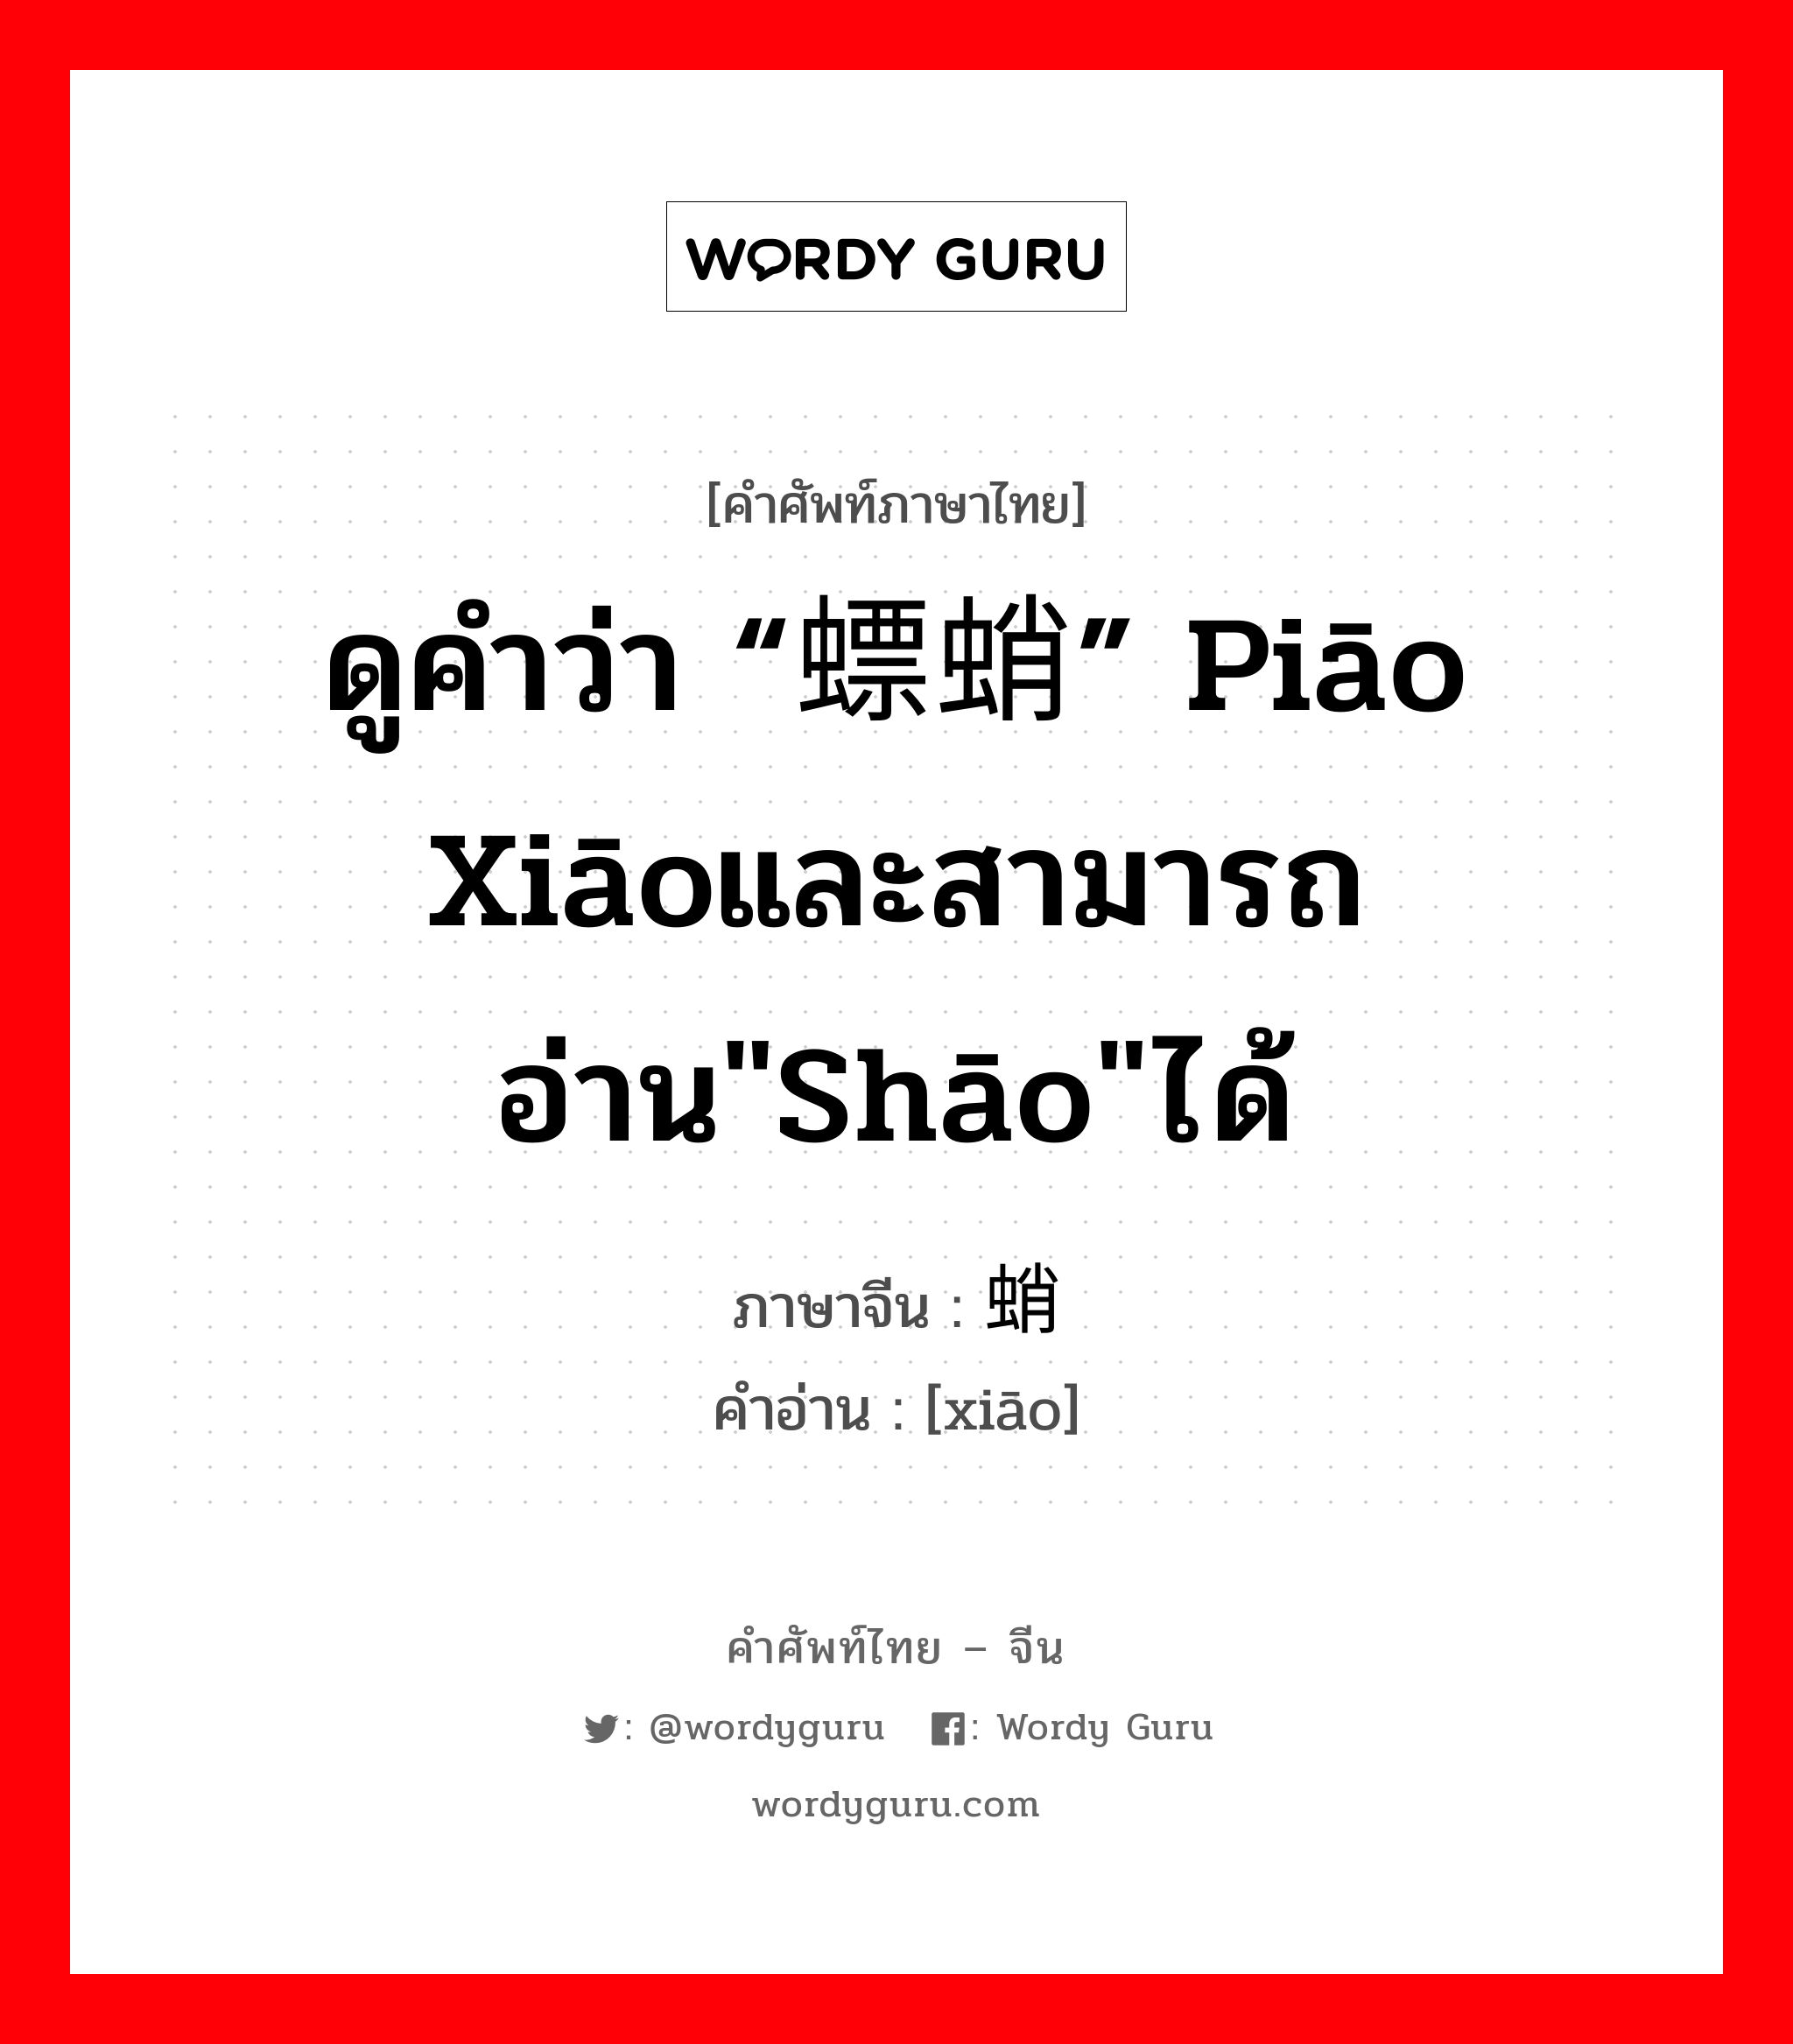 ดูคำว่า “螵蛸” piāo xiāoและสามารถอ่าน"shāo"ได้ ภาษาจีนคืออะไร, คำศัพท์ภาษาไทย - จีน ดูคำว่า “螵蛸” piāo xiāoและสามารถอ่าน"shāo"ได้ ภาษาจีน 蛸 คำอ่าน [xiāo]